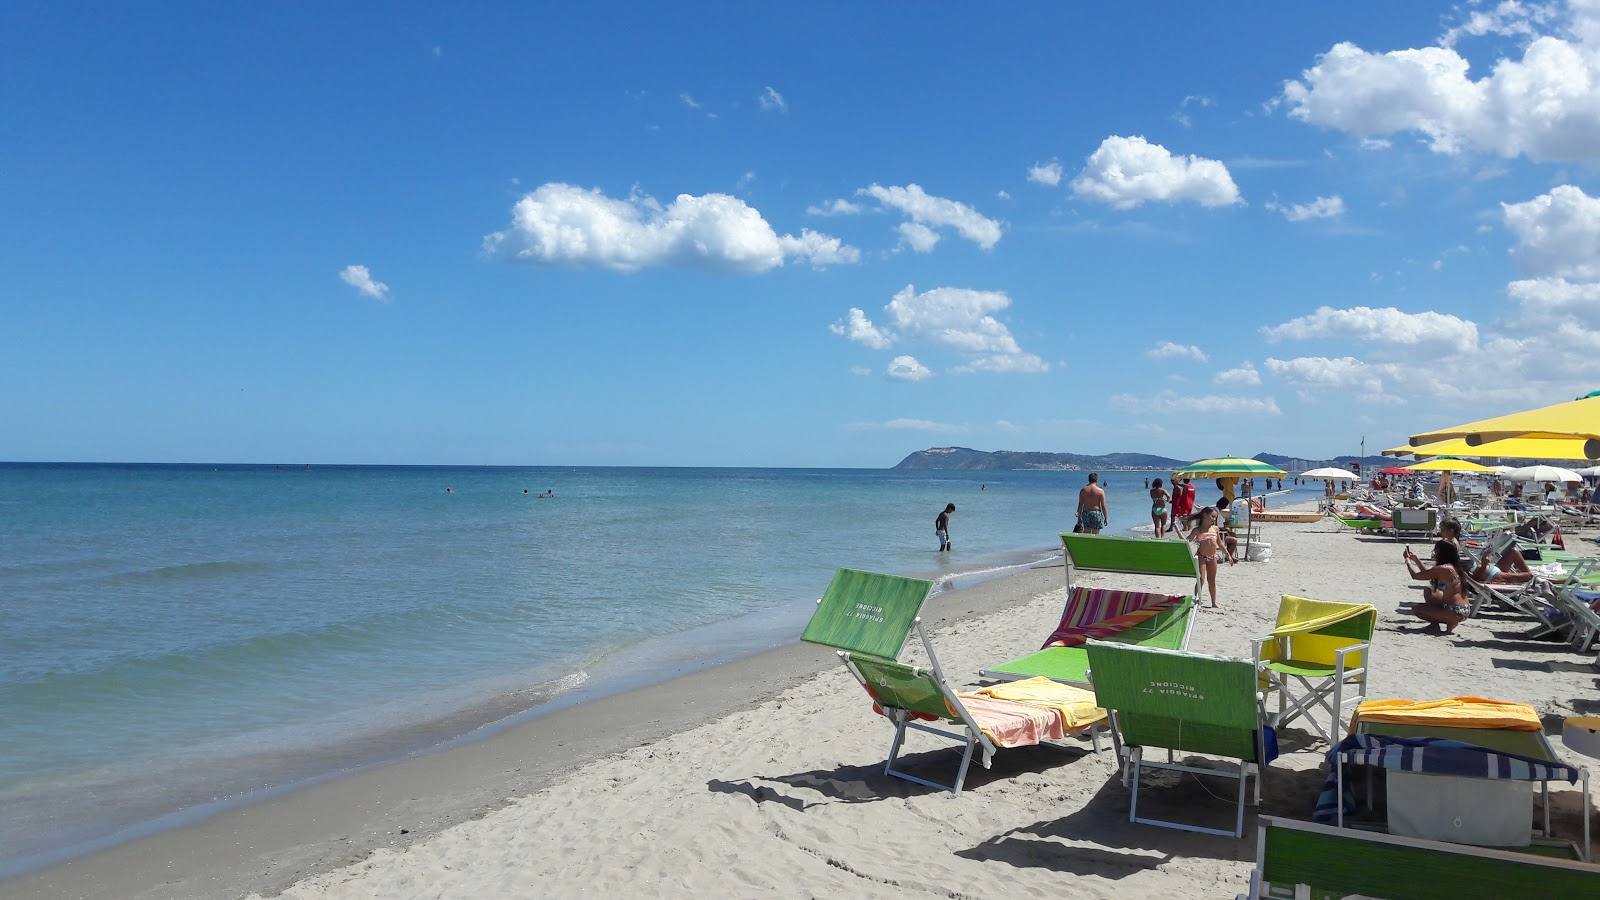 Foto de Spiaggia Libera Riccione con playa amplia